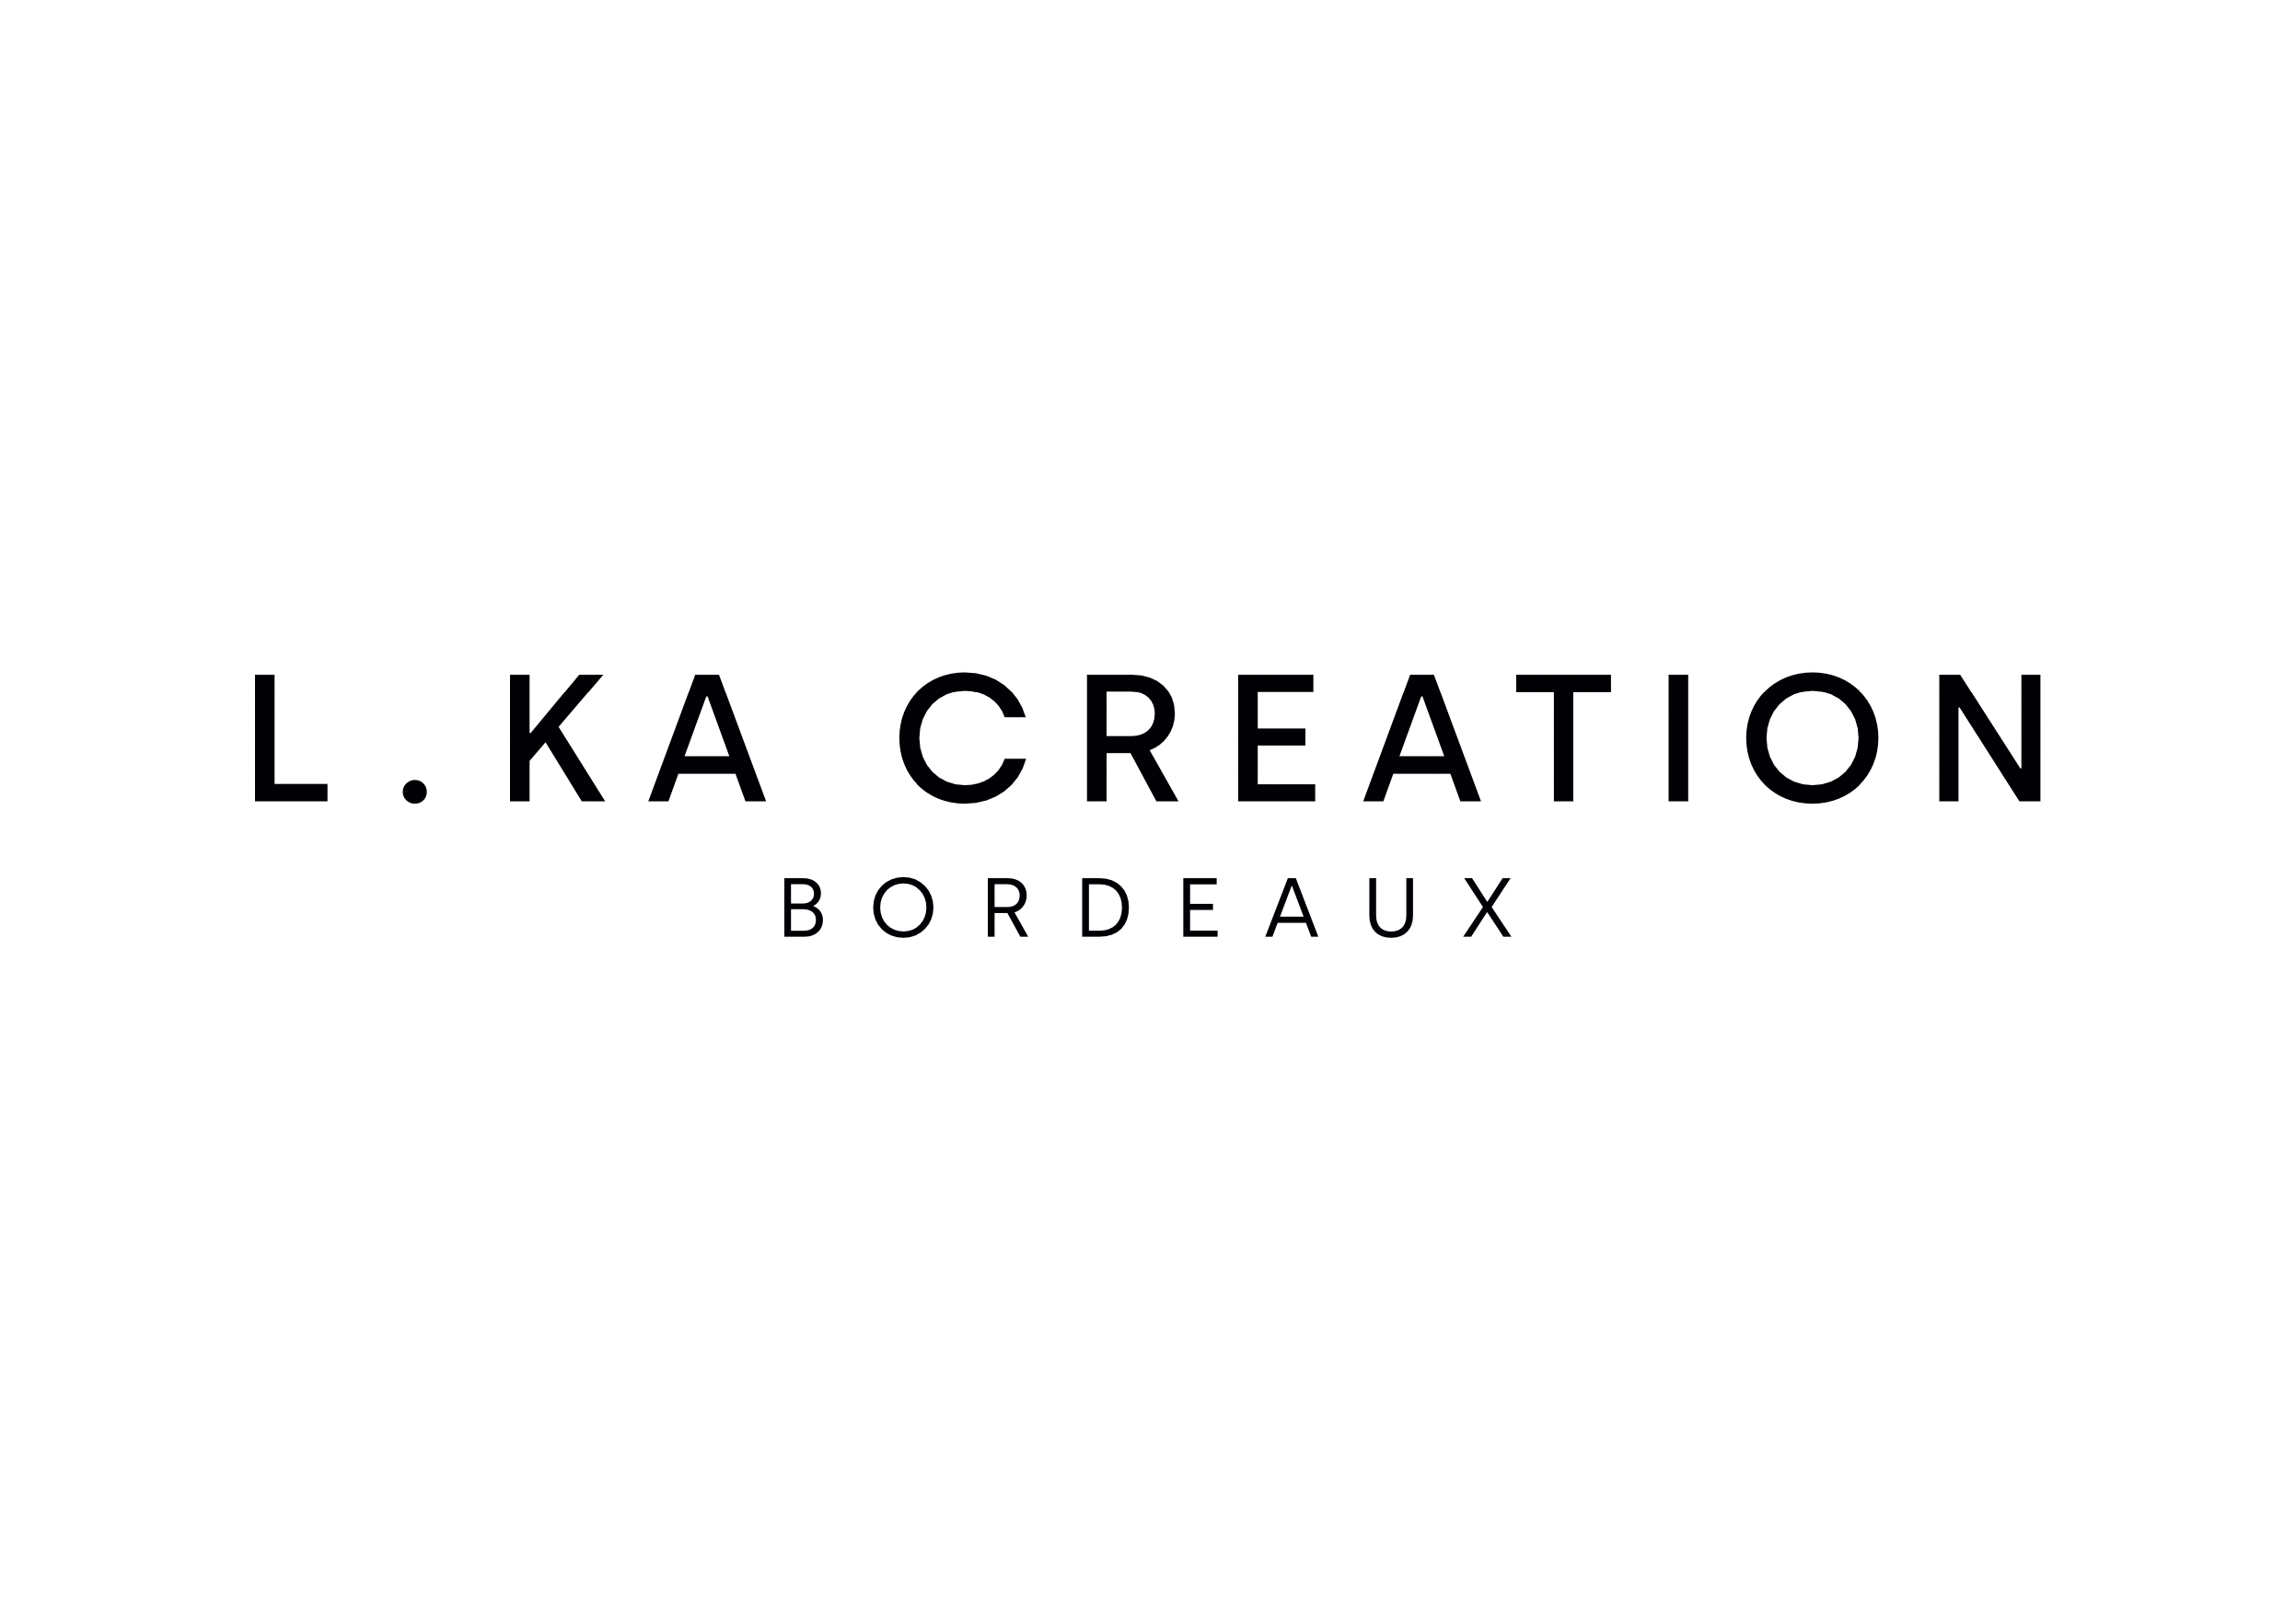 LKA CREATION